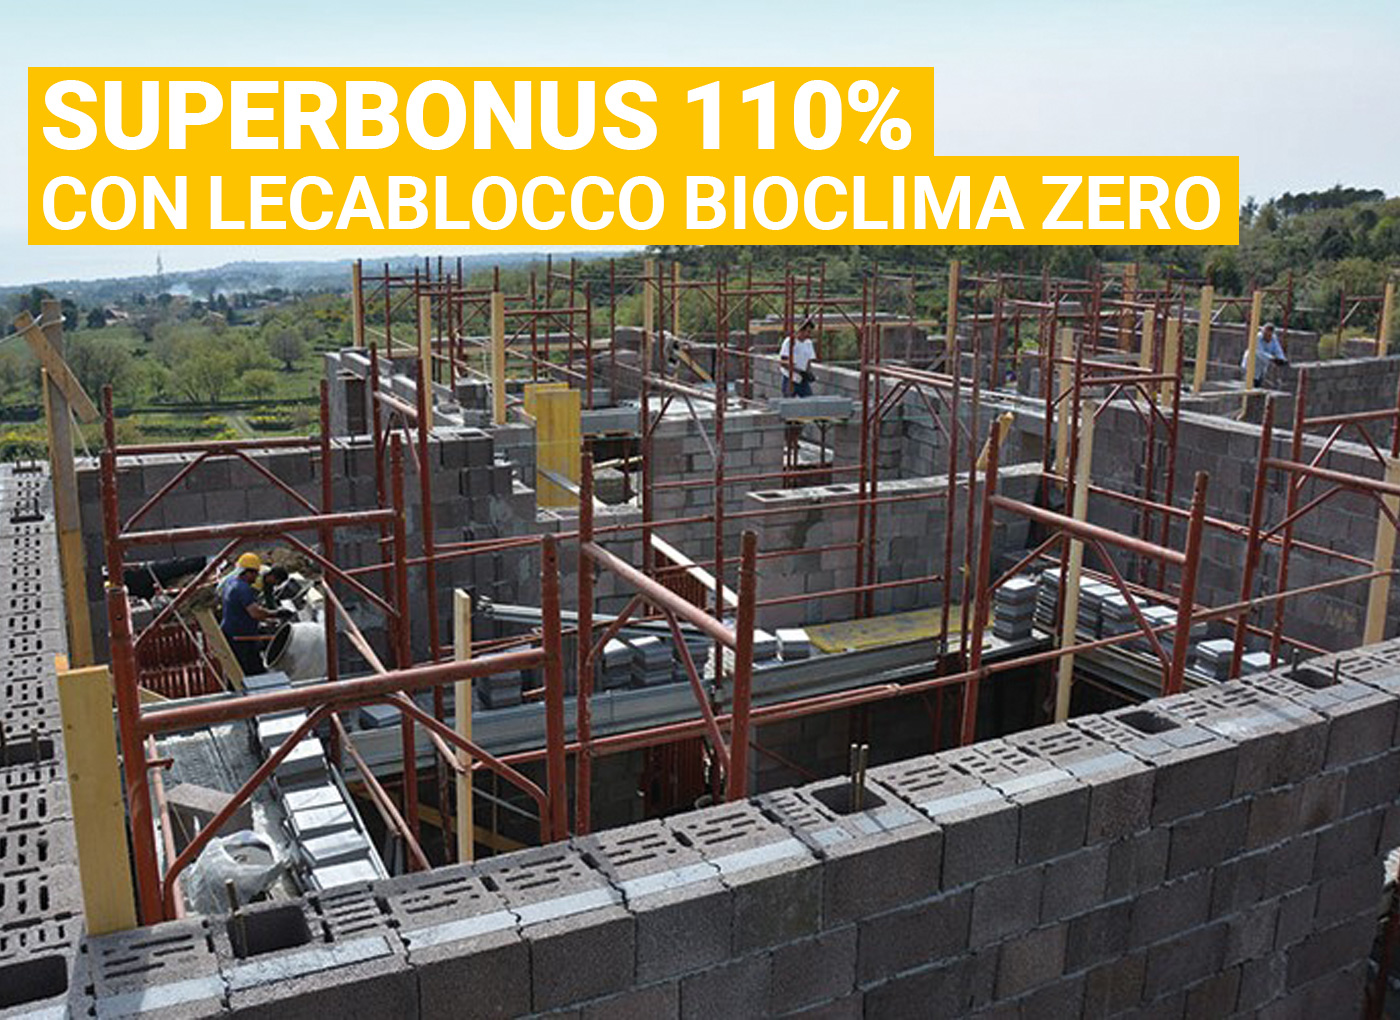 bioclimazero-lecablocco-lecasistemi-demolizione-ricostruzione-superbonus110-laterlite